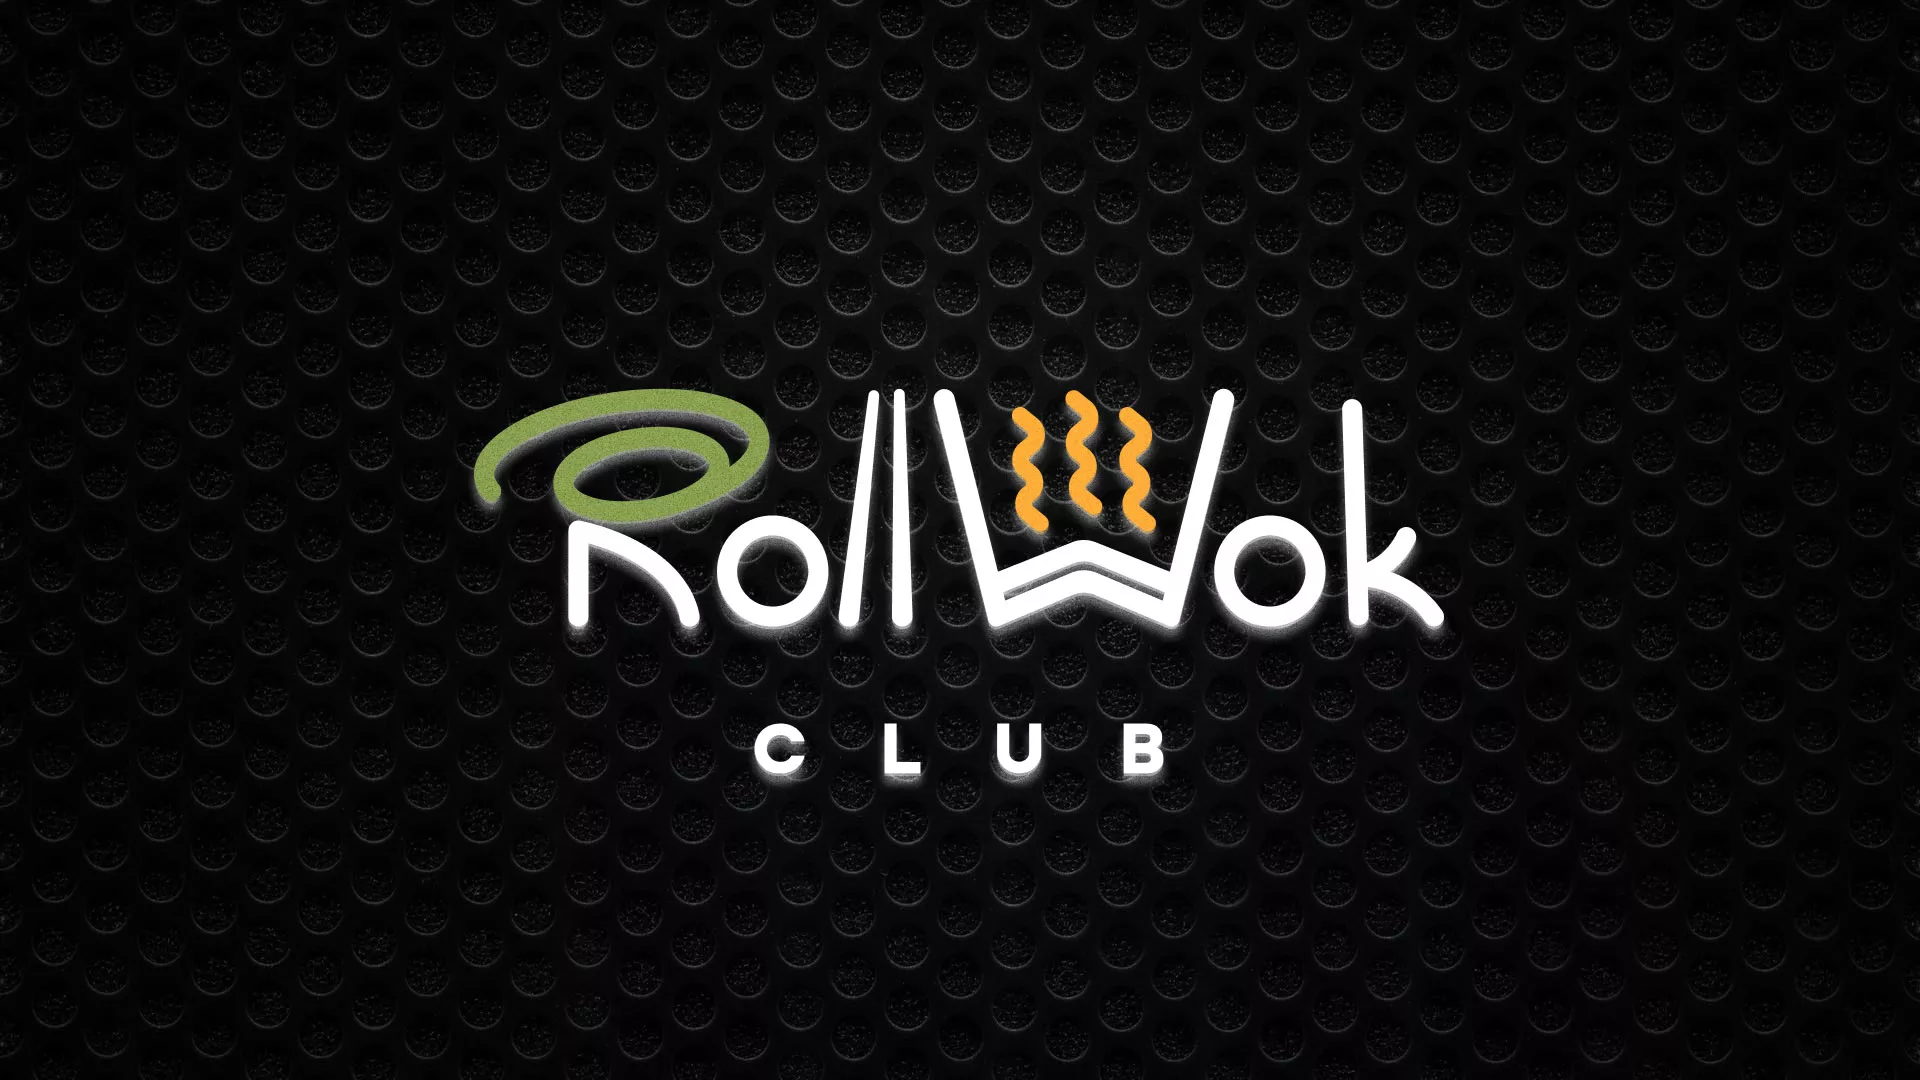 Брендирование торговых точек суши-бара «Roll Wok Club» в Новоалександровске